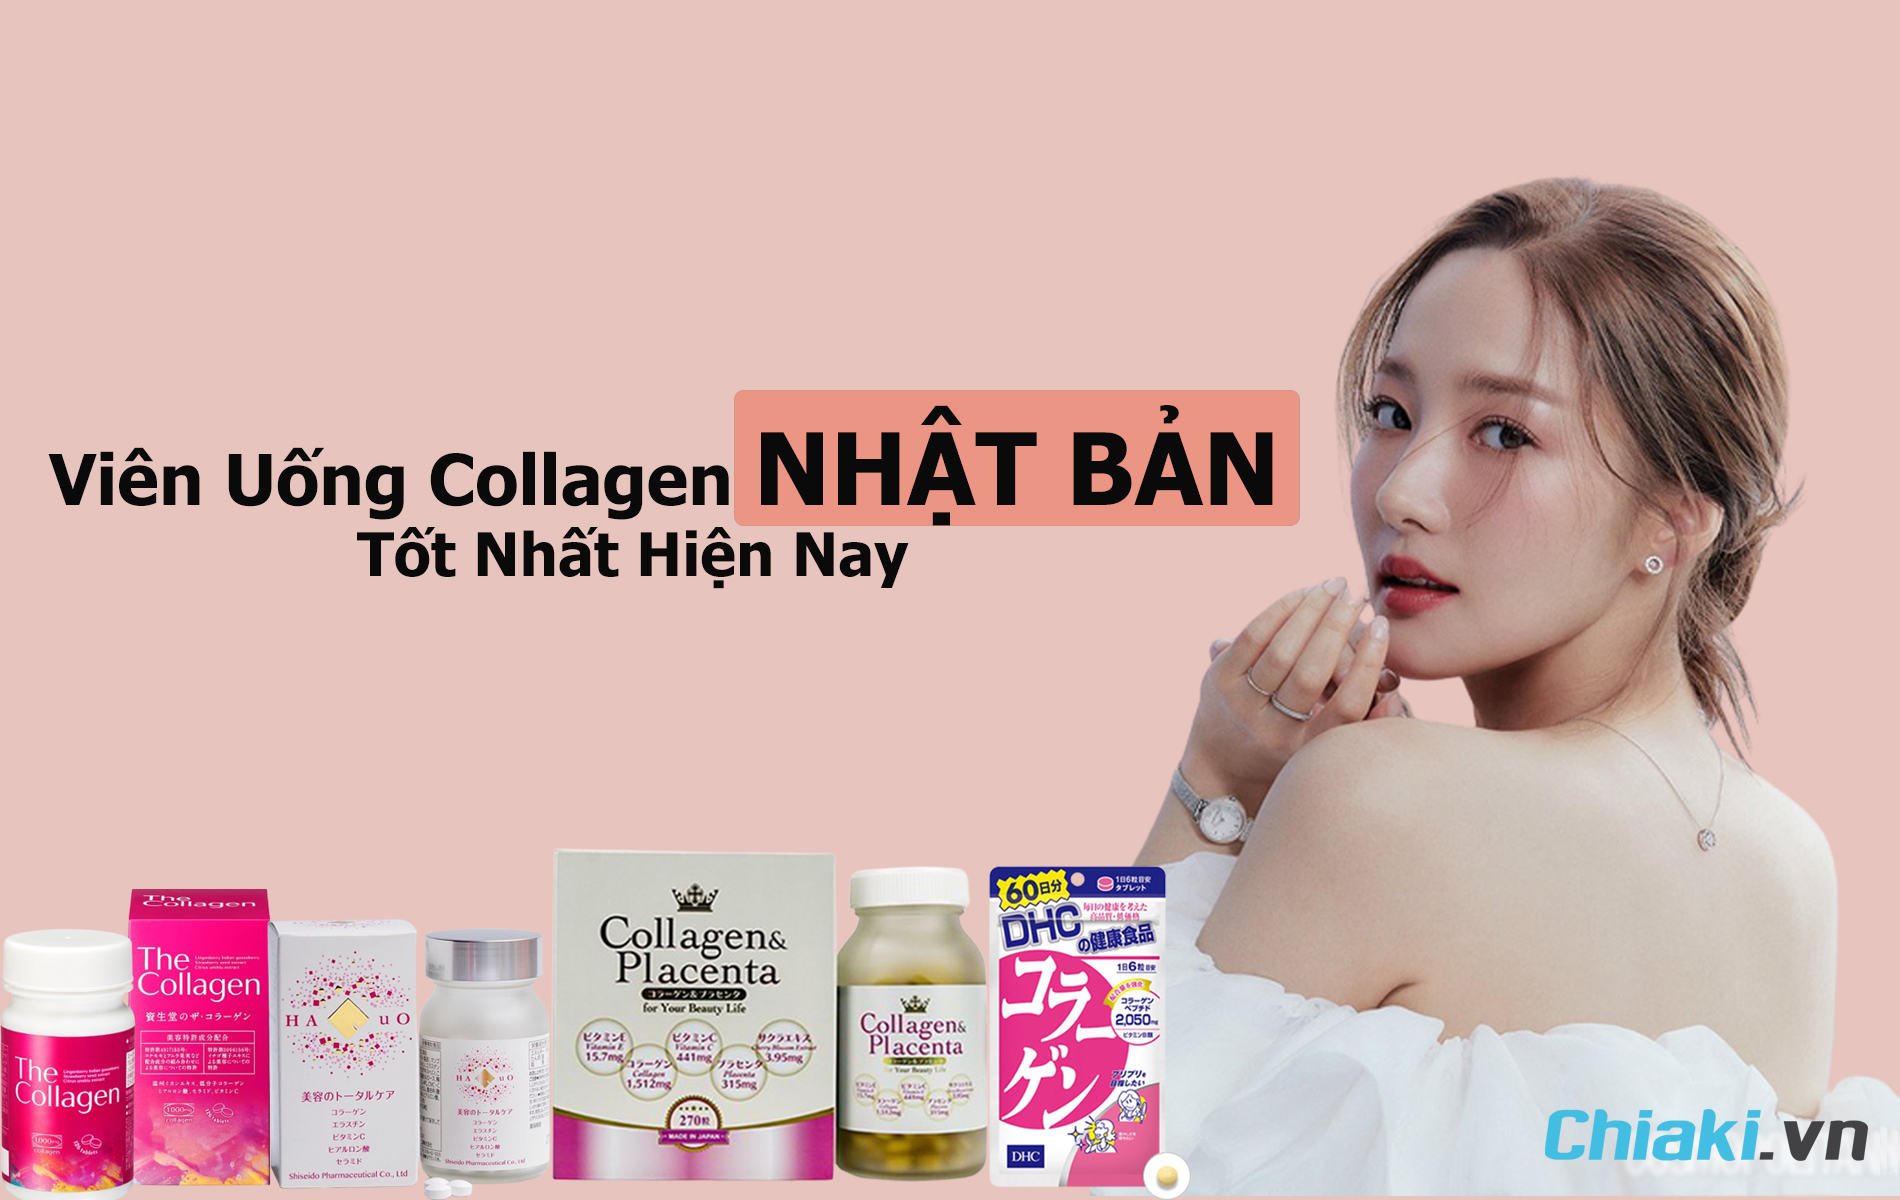 Collagen bột của Hàn Quốc có công dụng gì?
